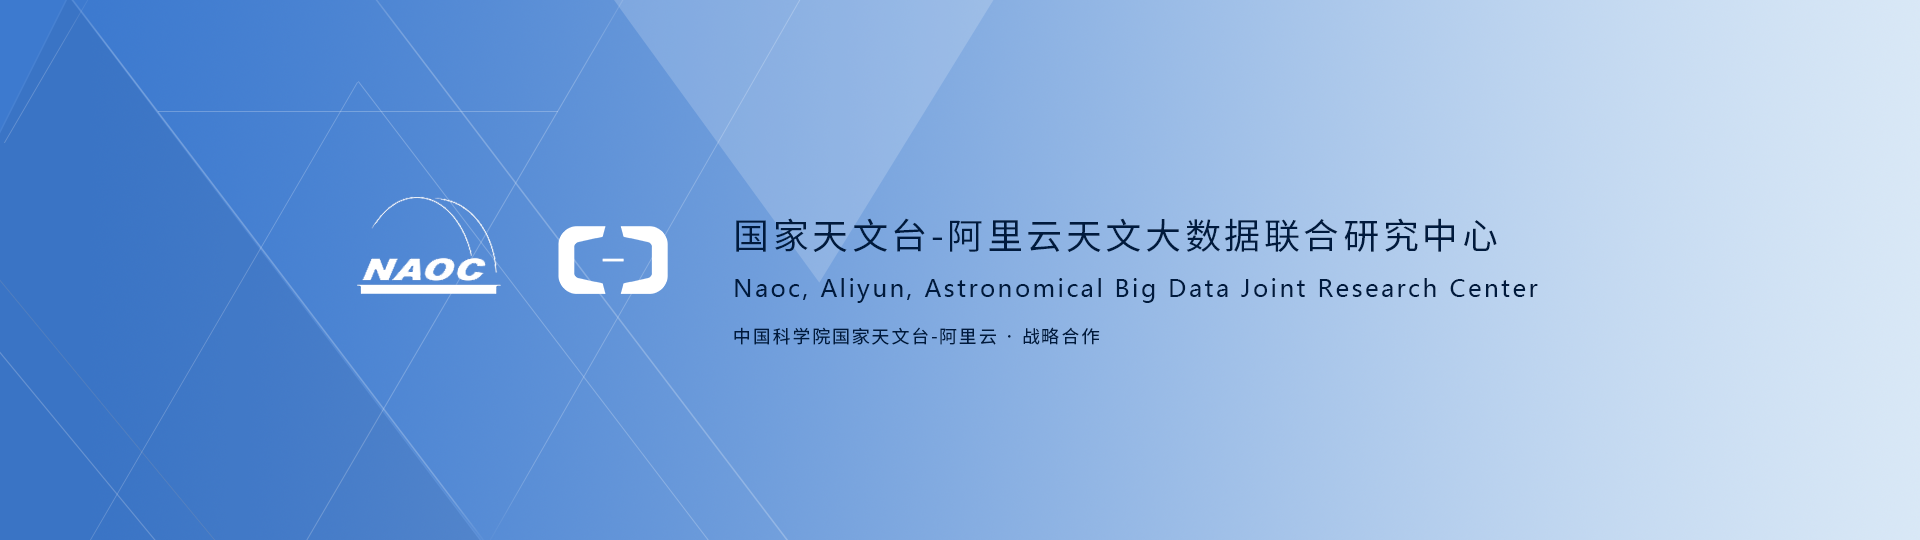 国家天文台-阿里云天文大数据联合研究中心成立